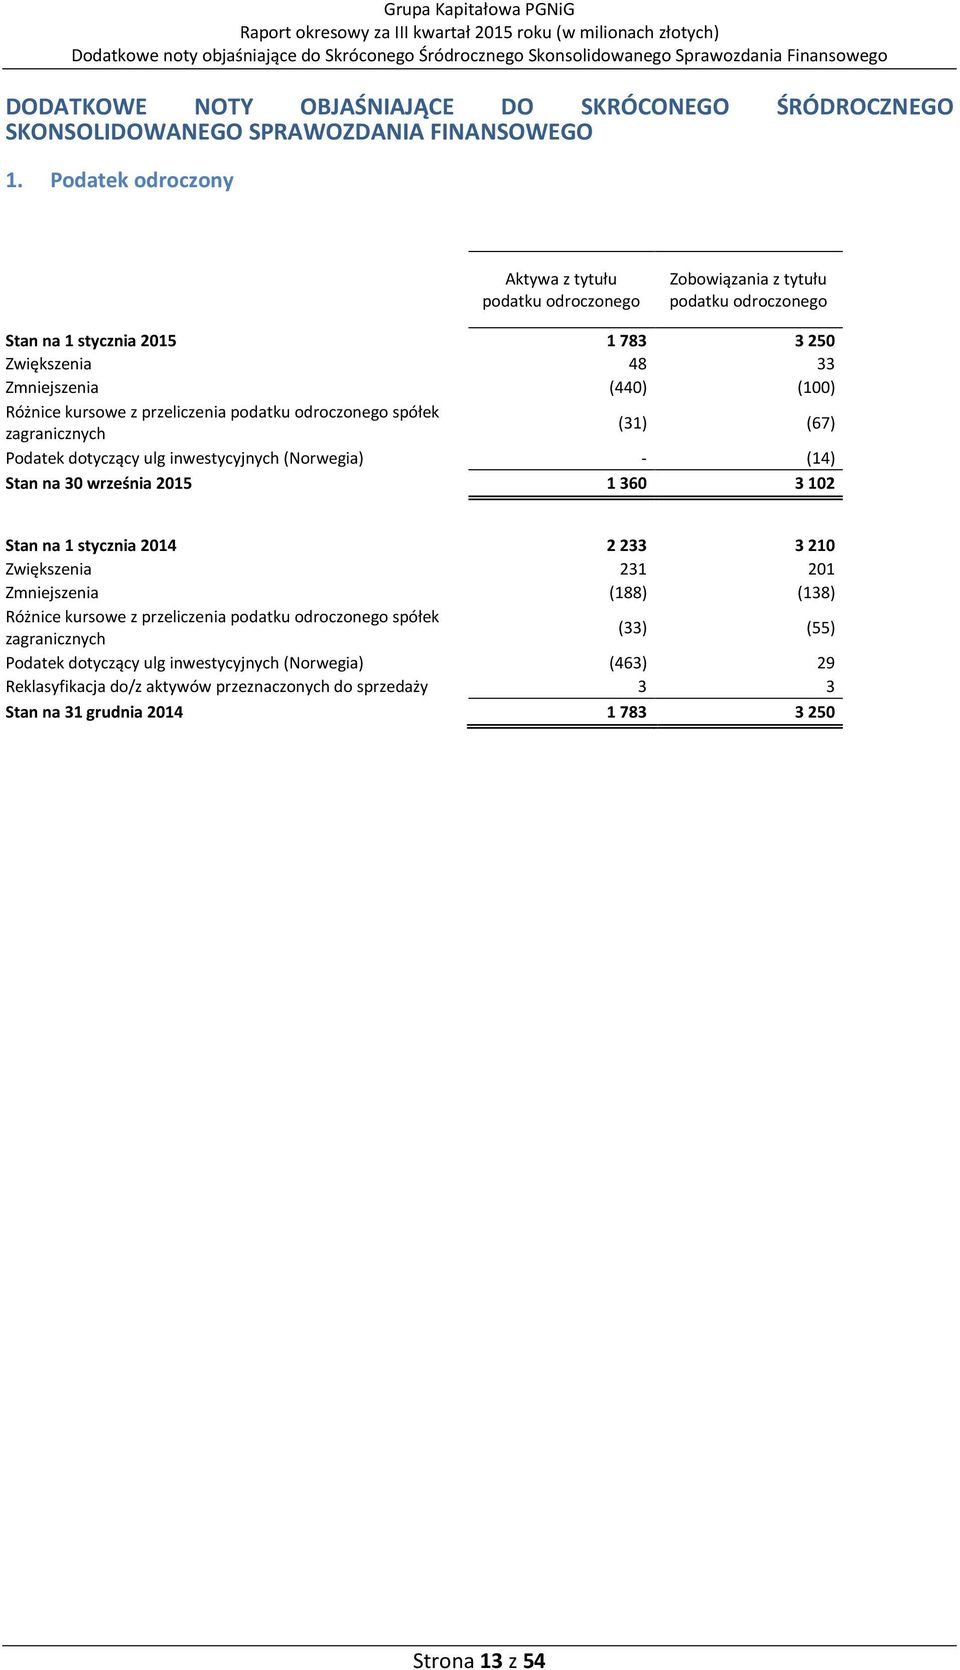 przeliczenia podatku odroczonego spółek zagranicznych (31) (67) Podatek dotyczący ulg inwestycyjnych (Norwegia) - (14) Stan na 30 września 2015 1360 3102 Stan na 1 stycznia 2014 2233 3210 Zwiększenia